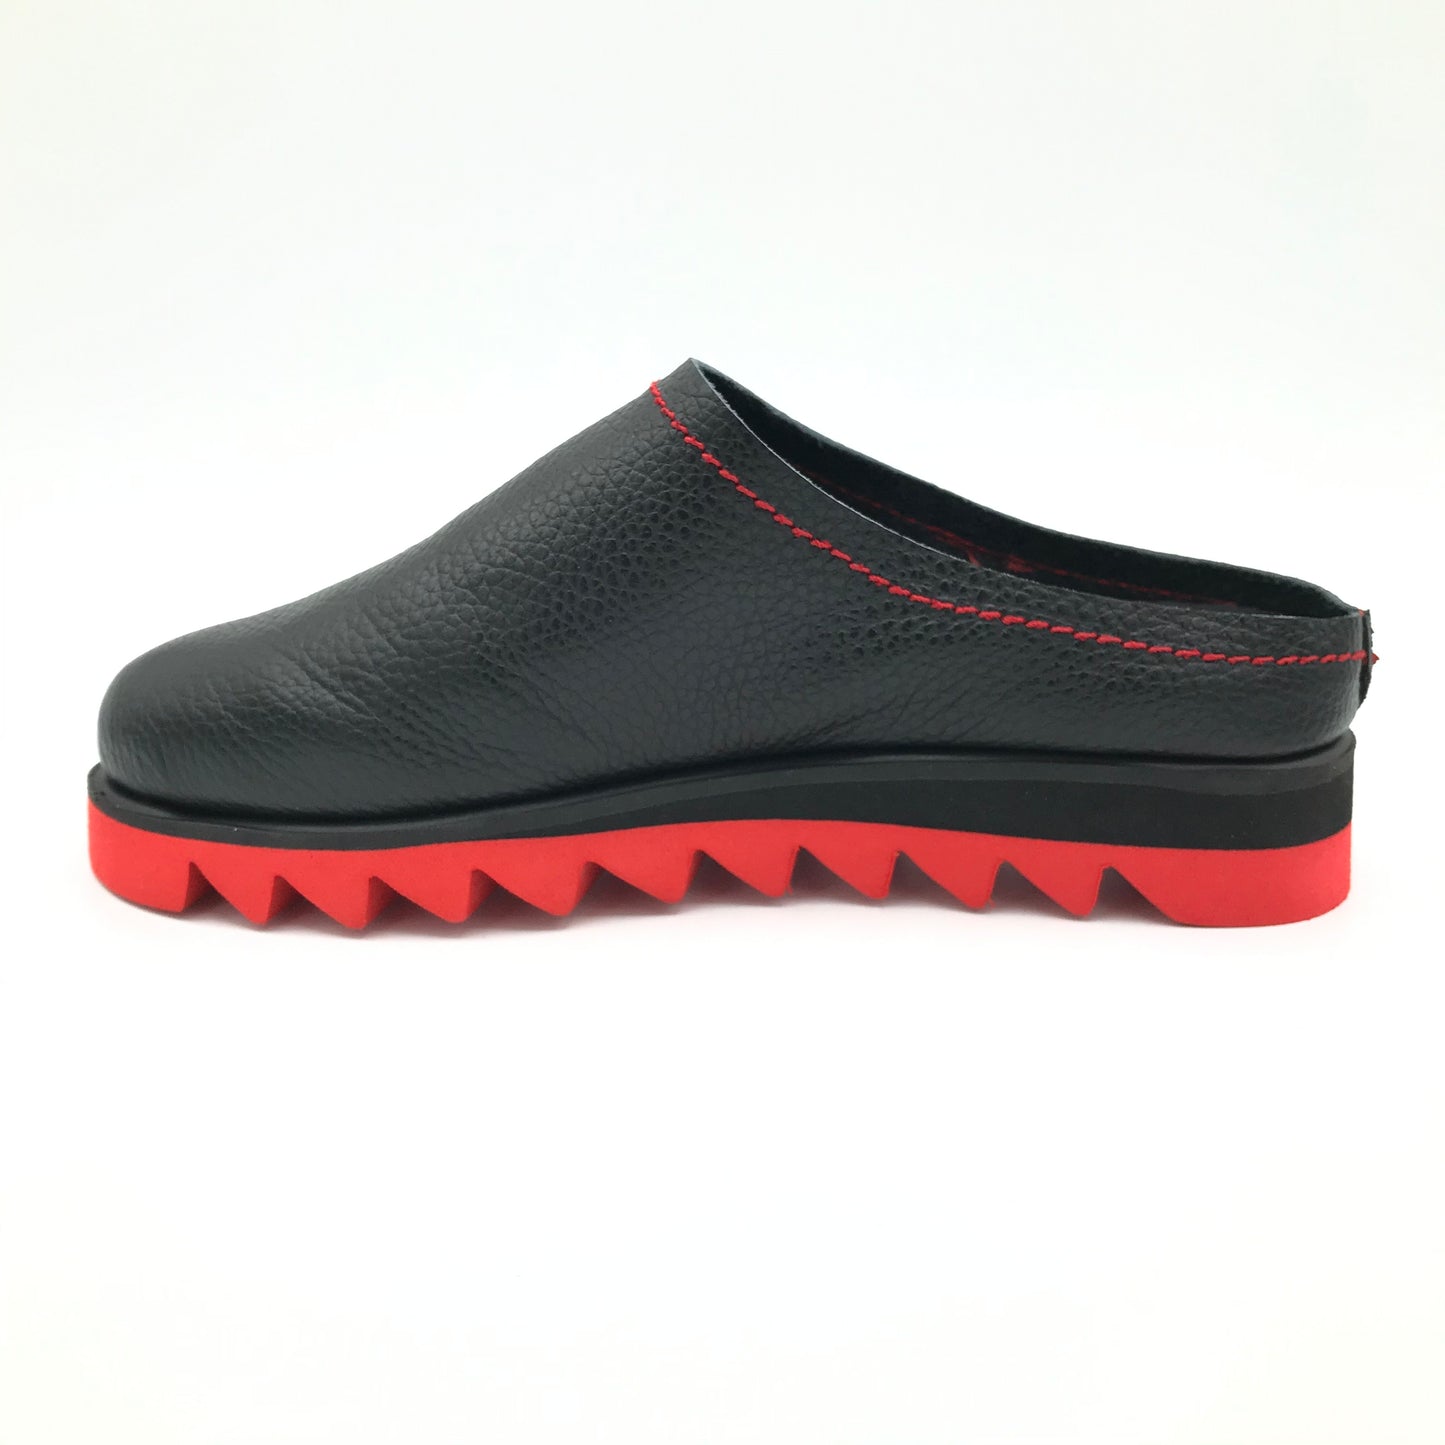 Clamp Finete Shoe - Imeldas Shoes Norwich